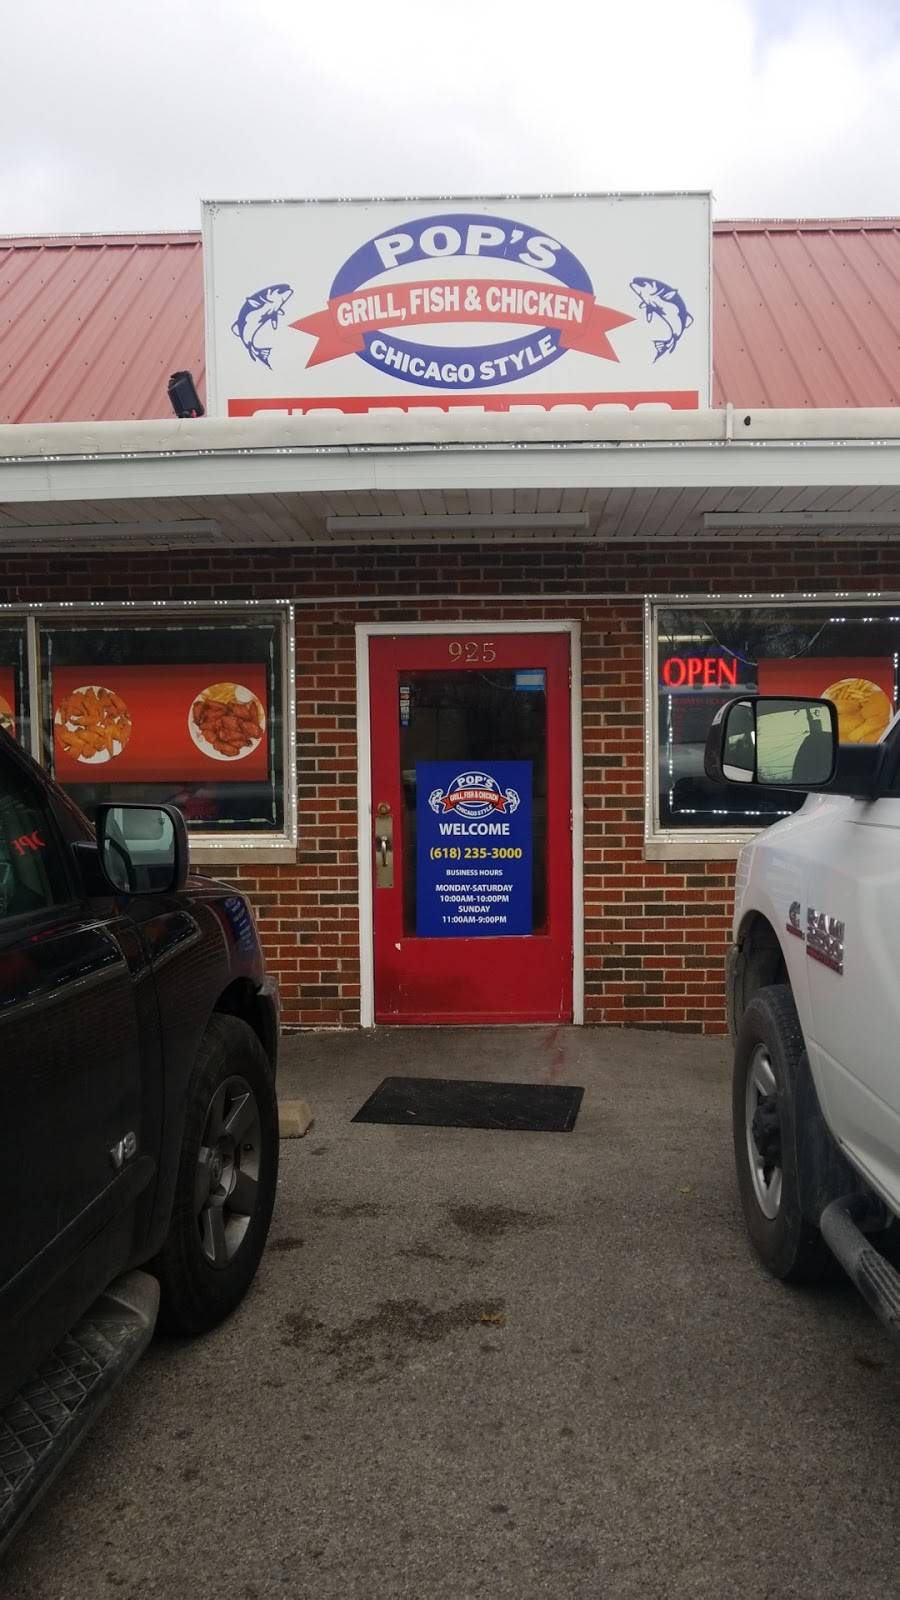 Pop’s Fish & Chicken | restaurant | 925 S Belt W, Belleville, IL 62220, USA | 6182353000 OR +1 618-235-3000